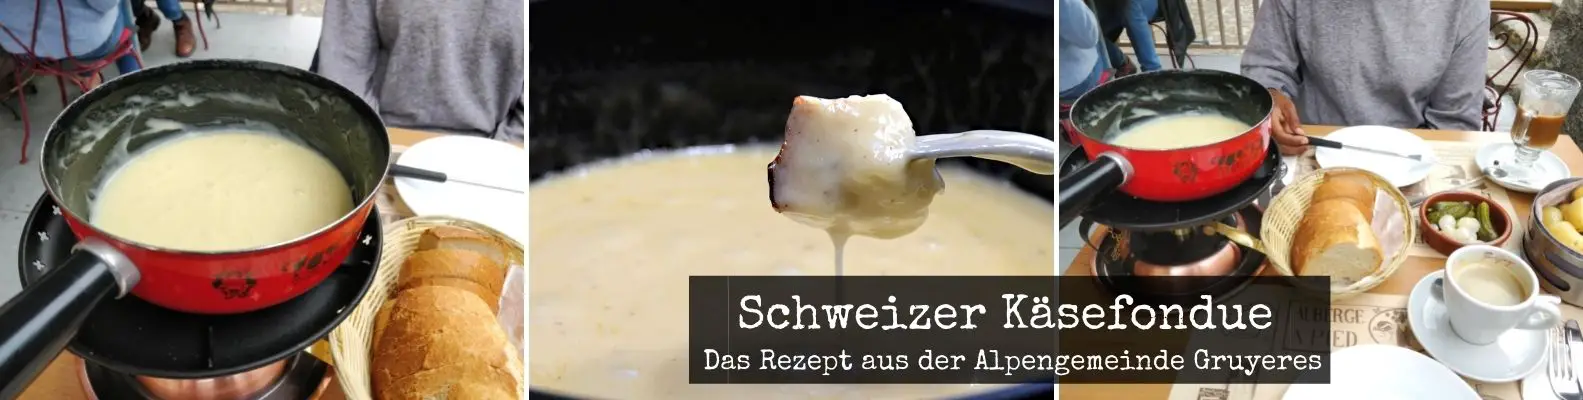 Rezept für Käsefondue aus der Schweiz